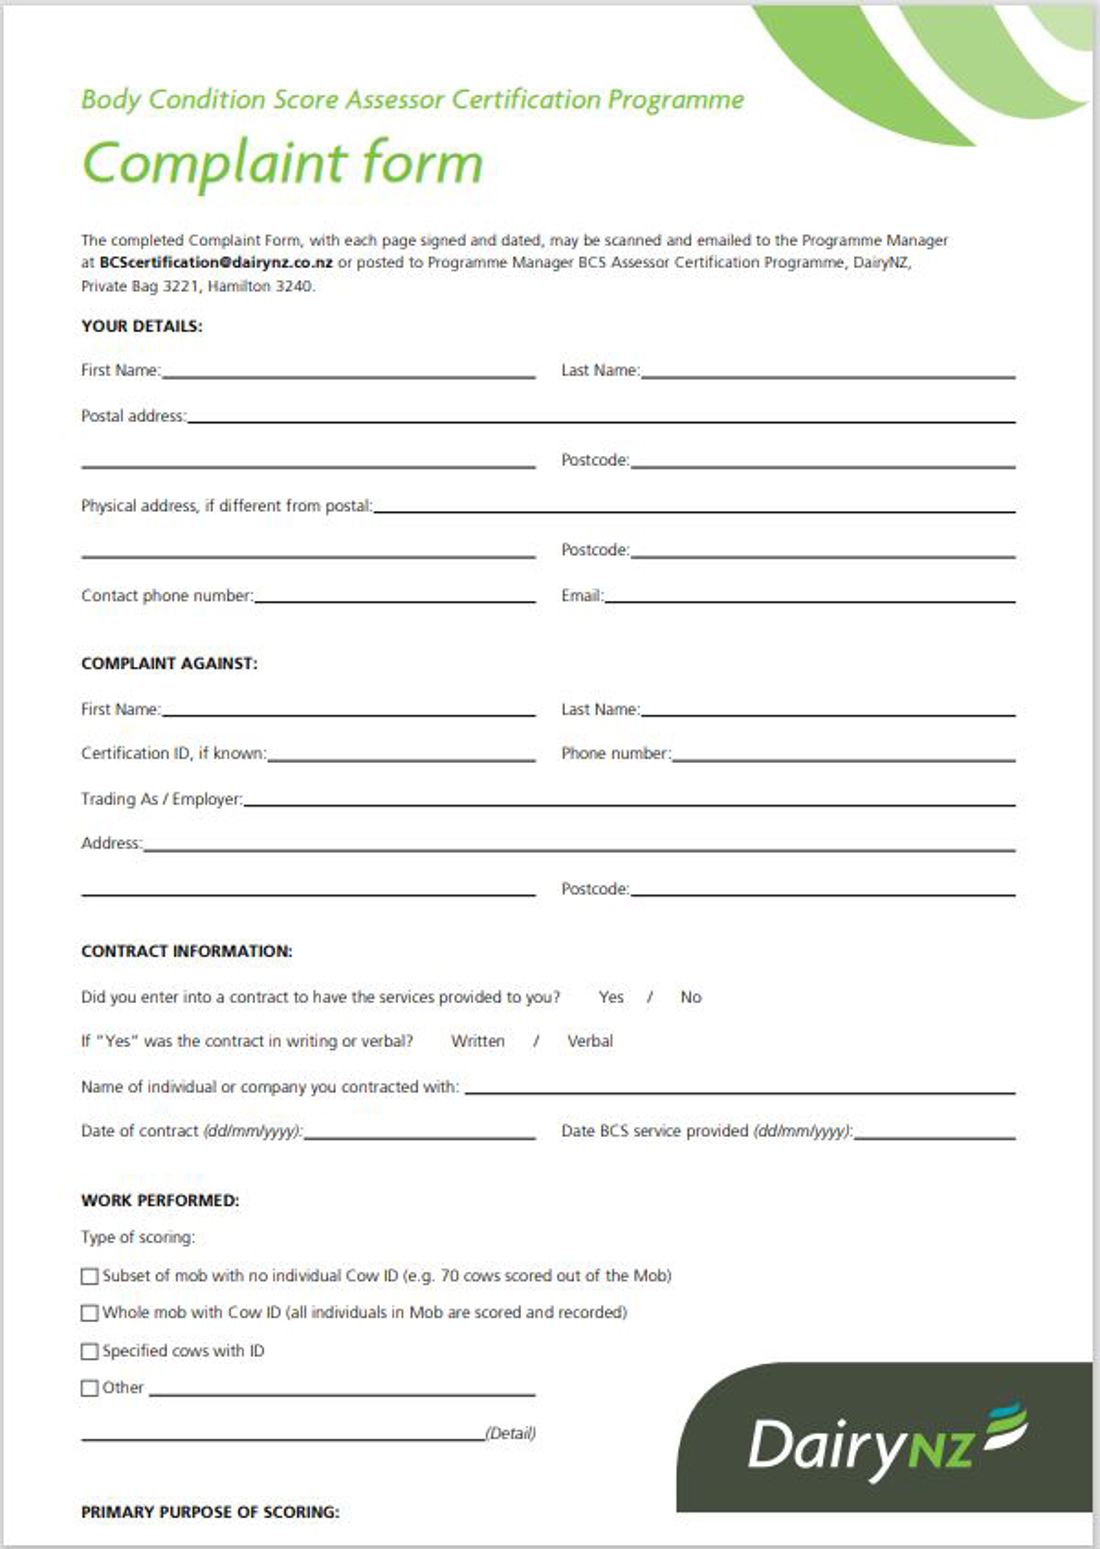 BCS Certification Programme Complaint Form